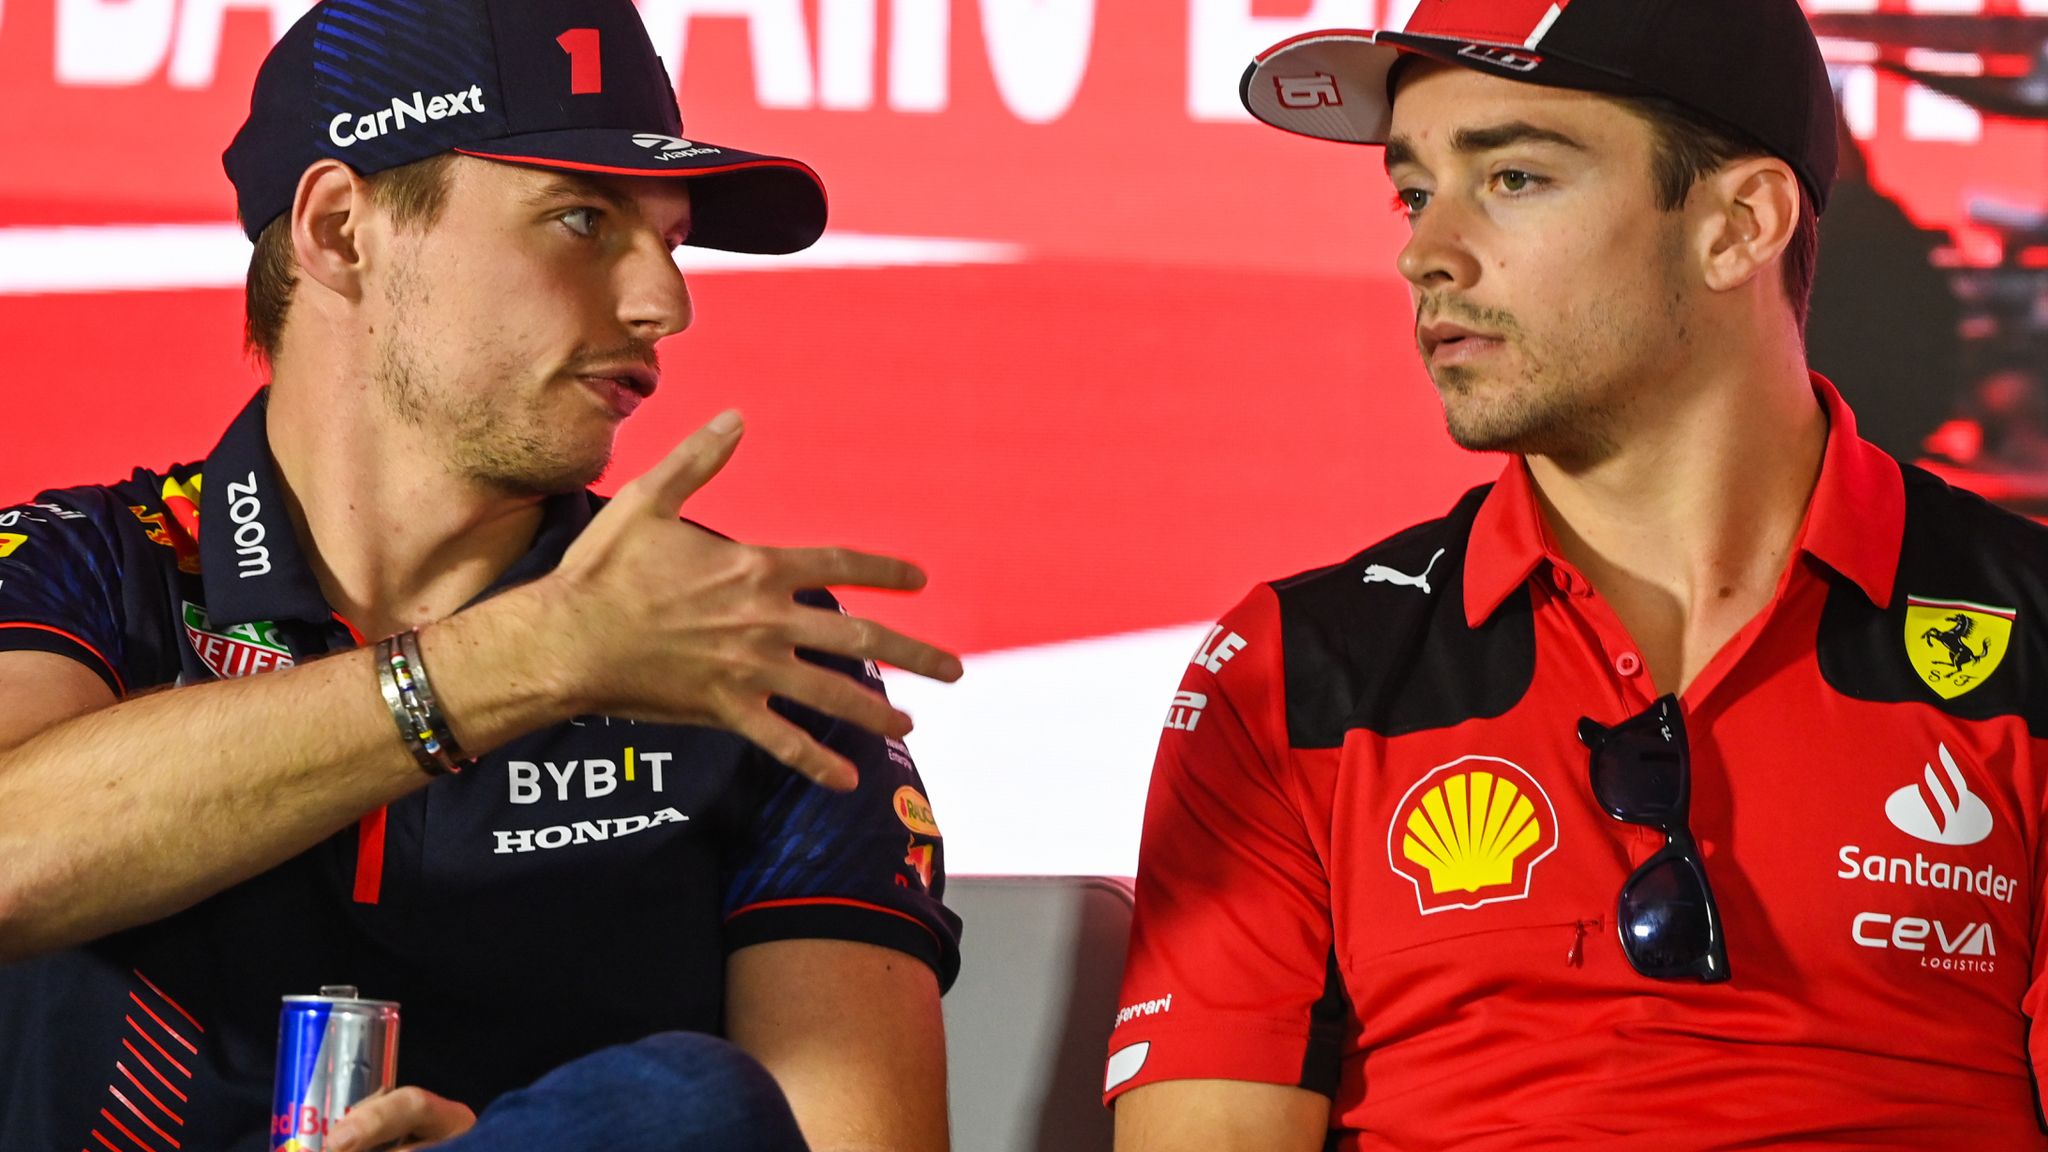 Charles Leclerc 'confident' Ferrari can overcome Red Bull advantage to win  2023 Formula 1 title | F1 News